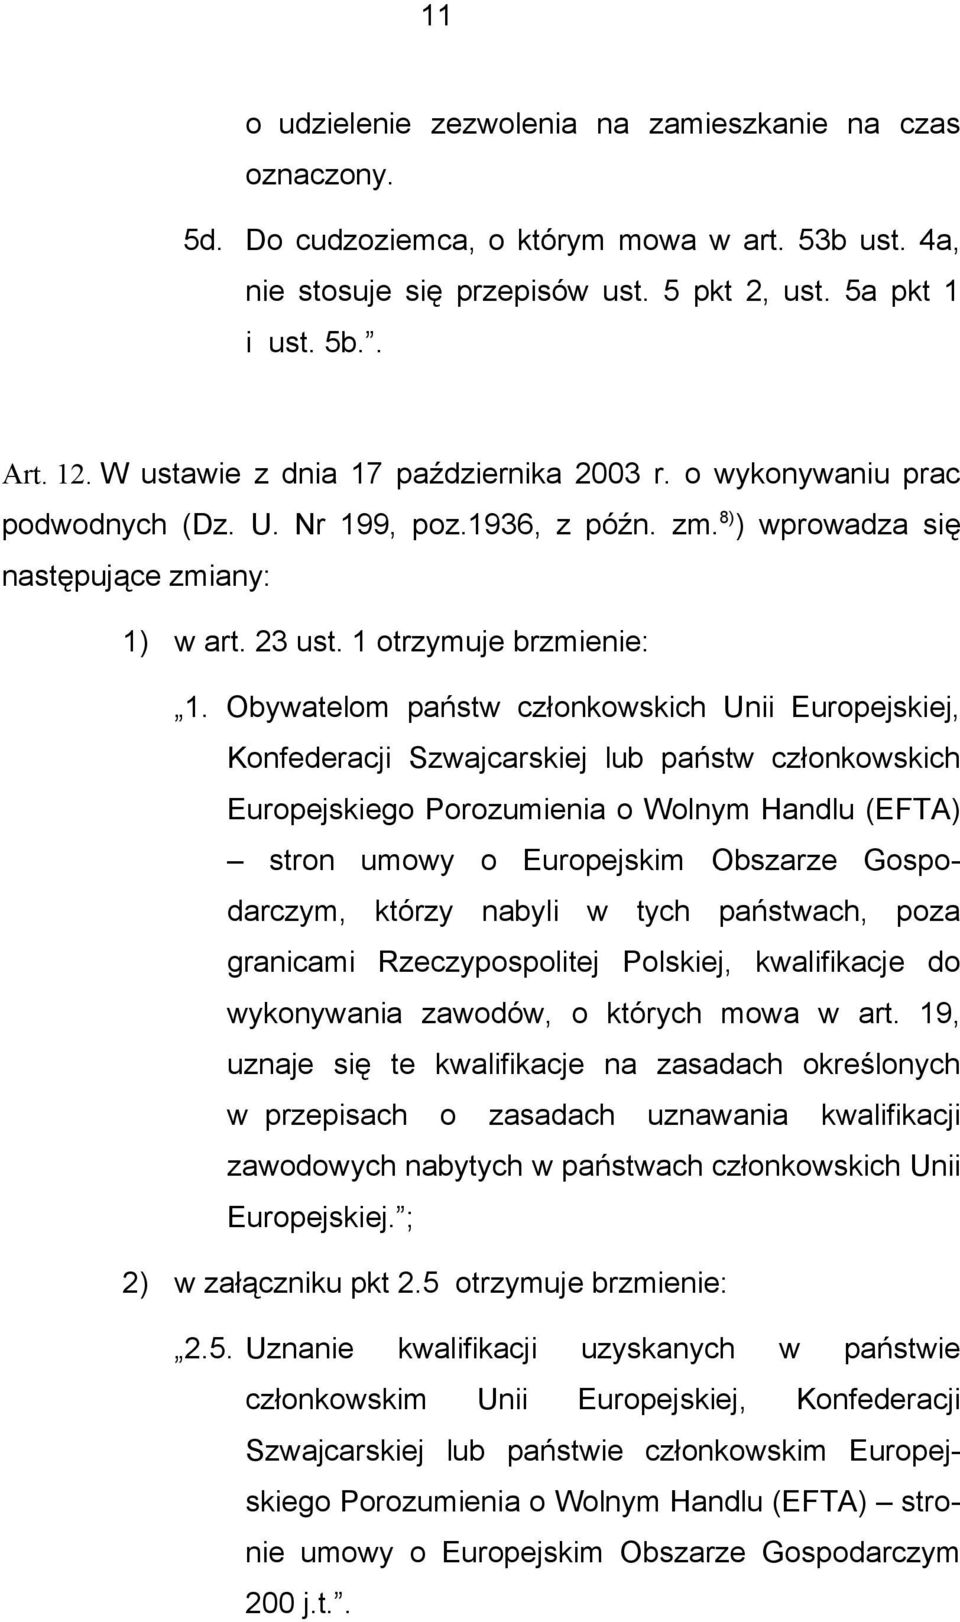 Obywatelom państw członkowskich Unii Europejskiej, Konfederacji Szwajcarskiej lub państw członkowskich Europejskiego Porozumienia o Wolnym Handlu (EFTA) stron umowy o Europejskim Obszarze